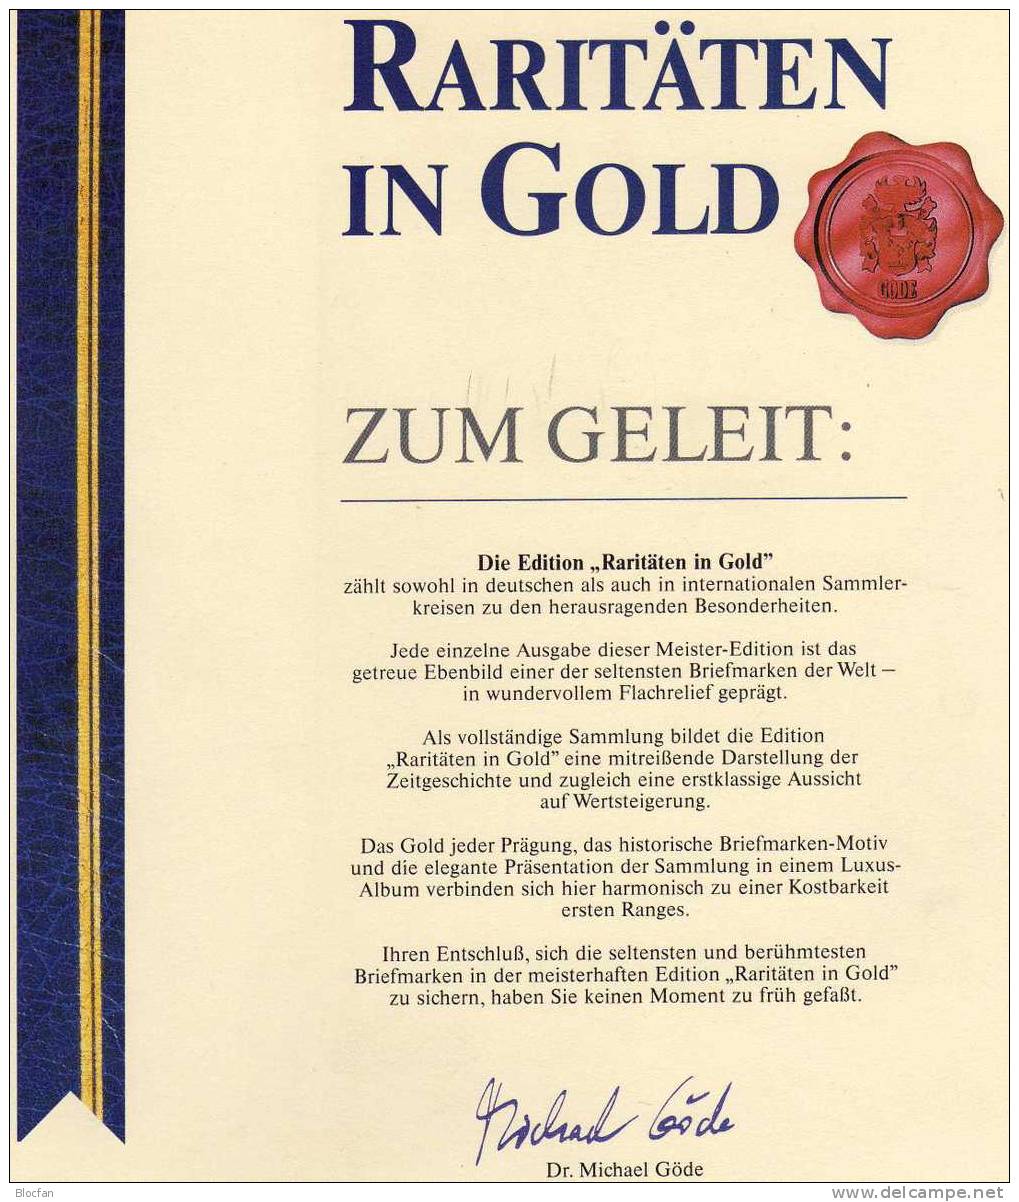 Deutschland Edition Raritäten in Gold BRD #1034 ** 50€ mit 23 Karat Feingold 1980 Bündnis NATO military stamp of Germany